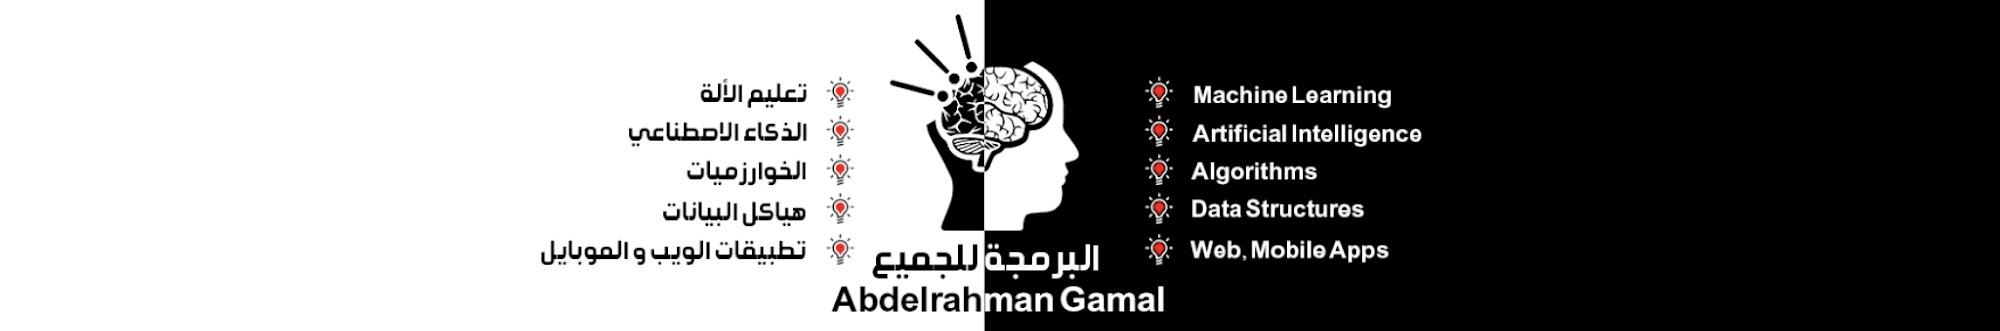 Abdelrahman Gamal